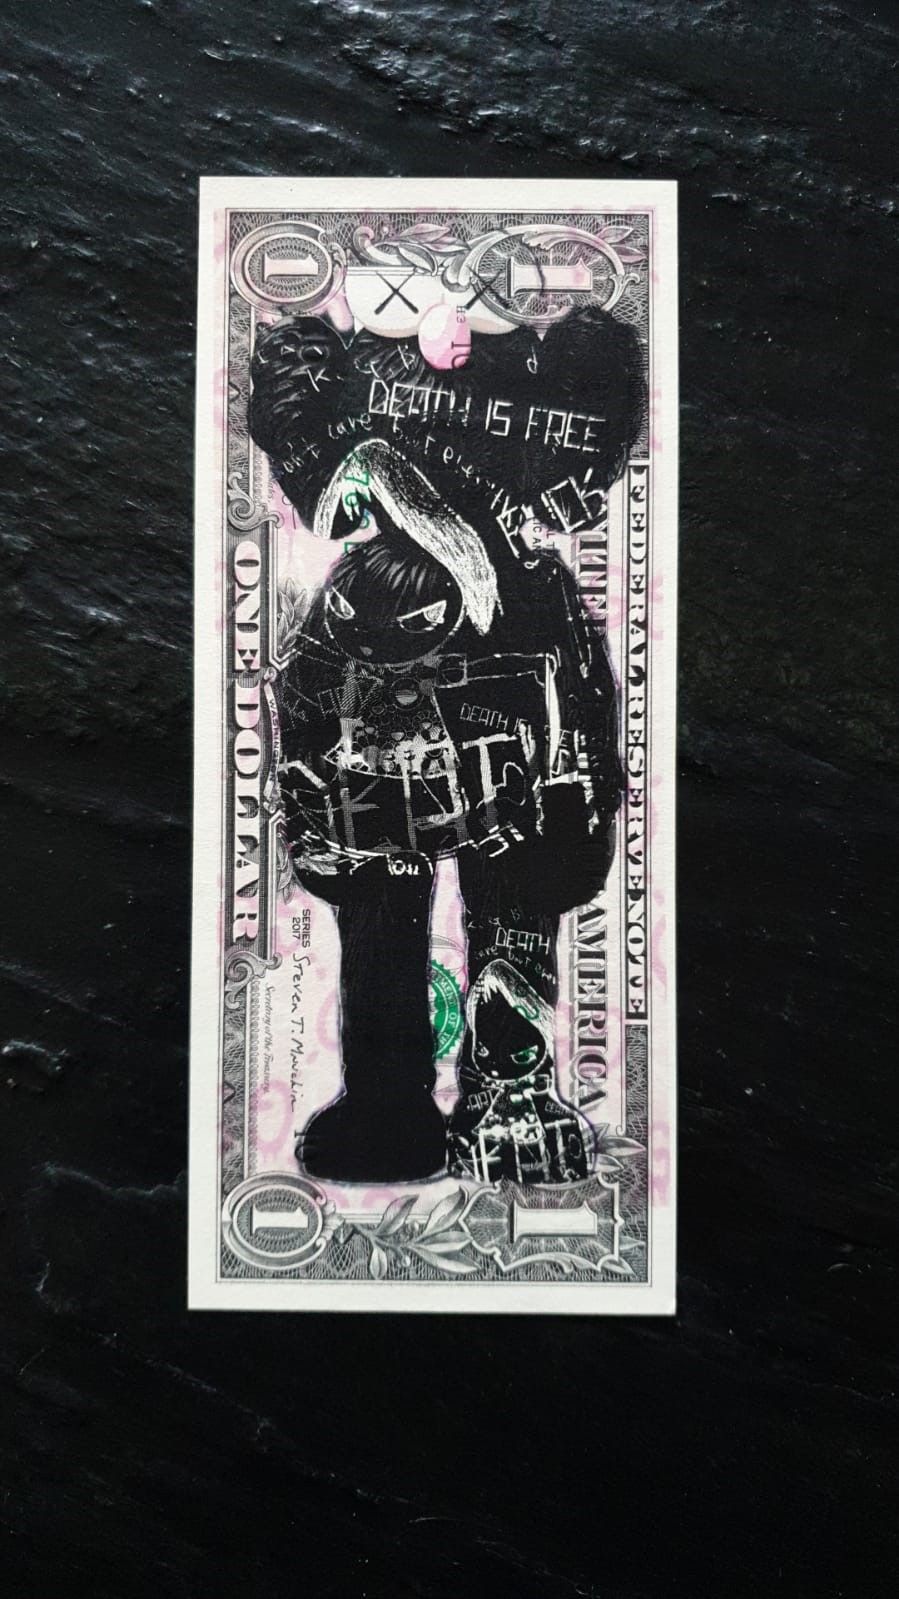 DEATH NYC Echte Ein-Dollar-Note im Siebdruckverfahren vom Künstler DEATH NYC, si&hellip;